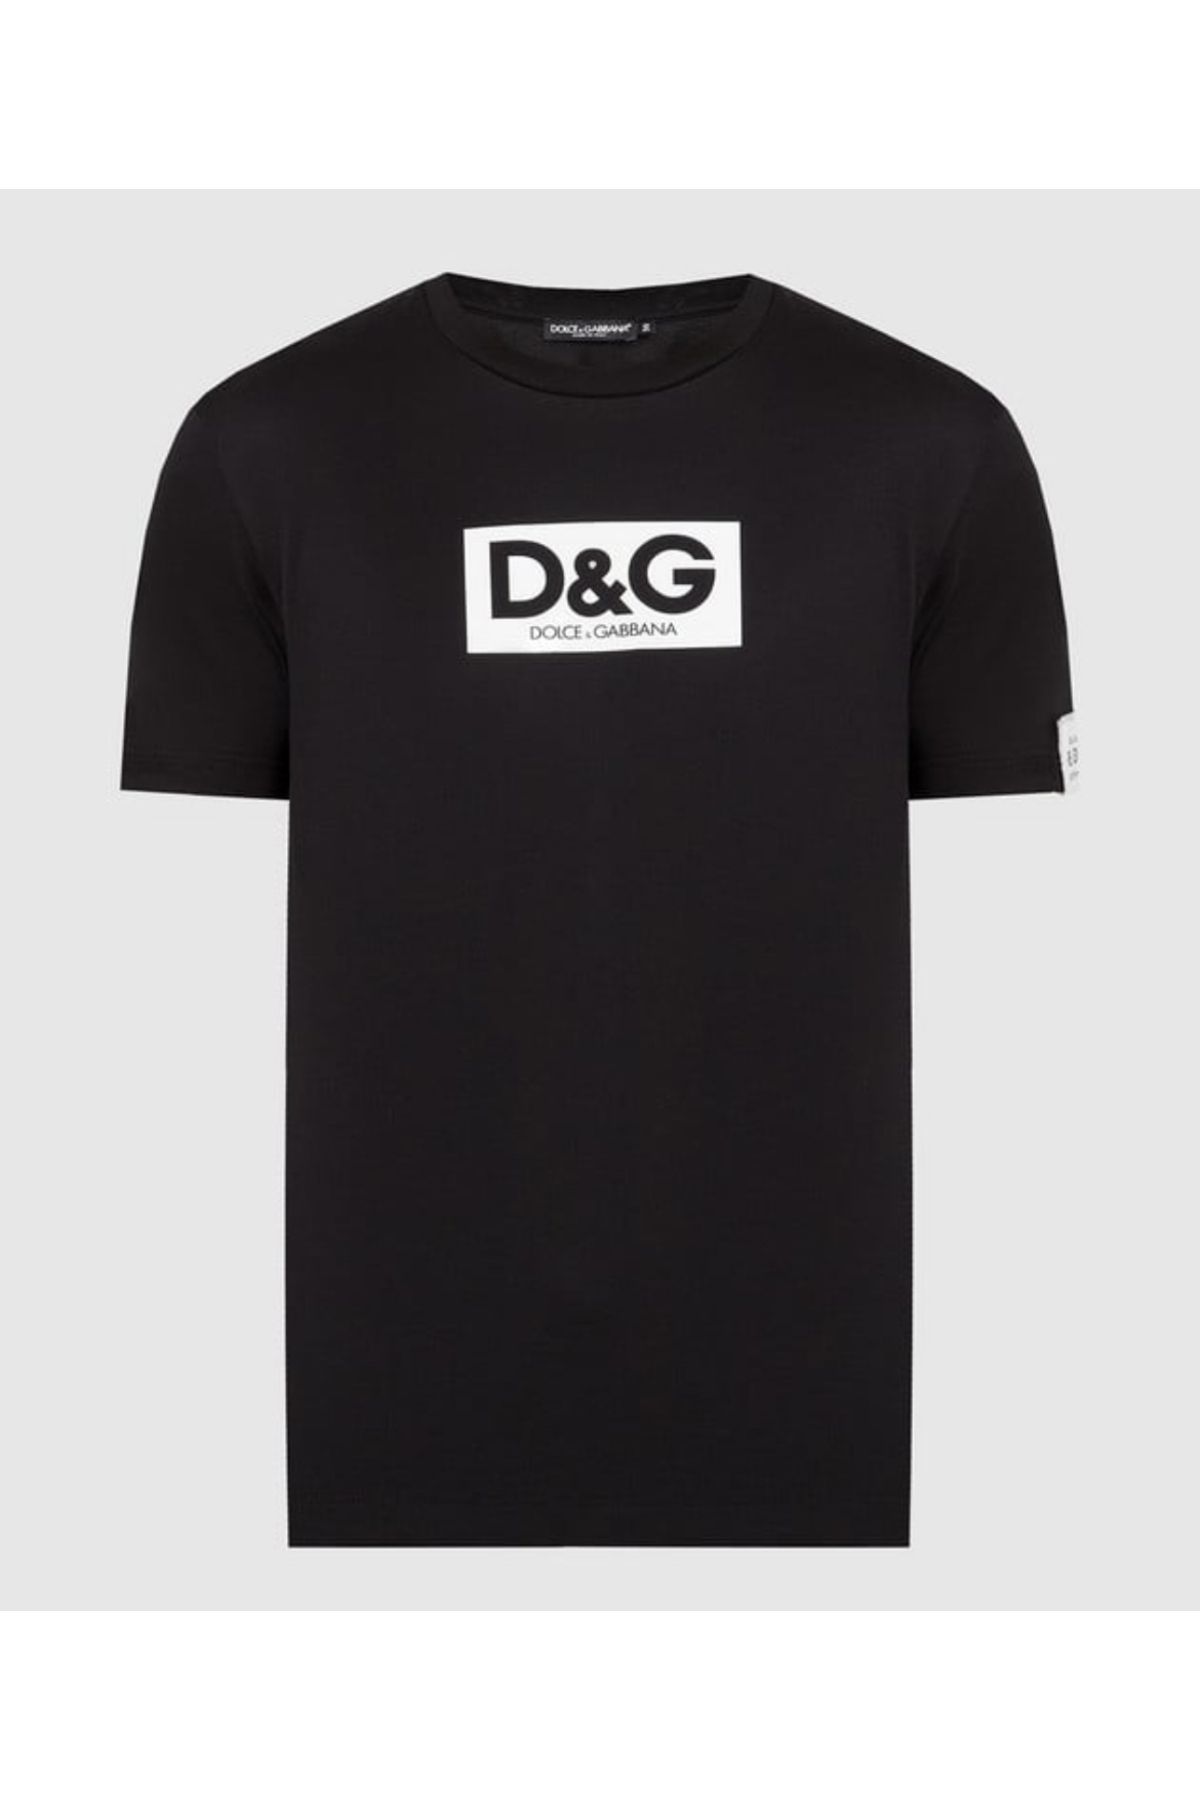 Dolce&Gabbana Re Edition T-Shirt